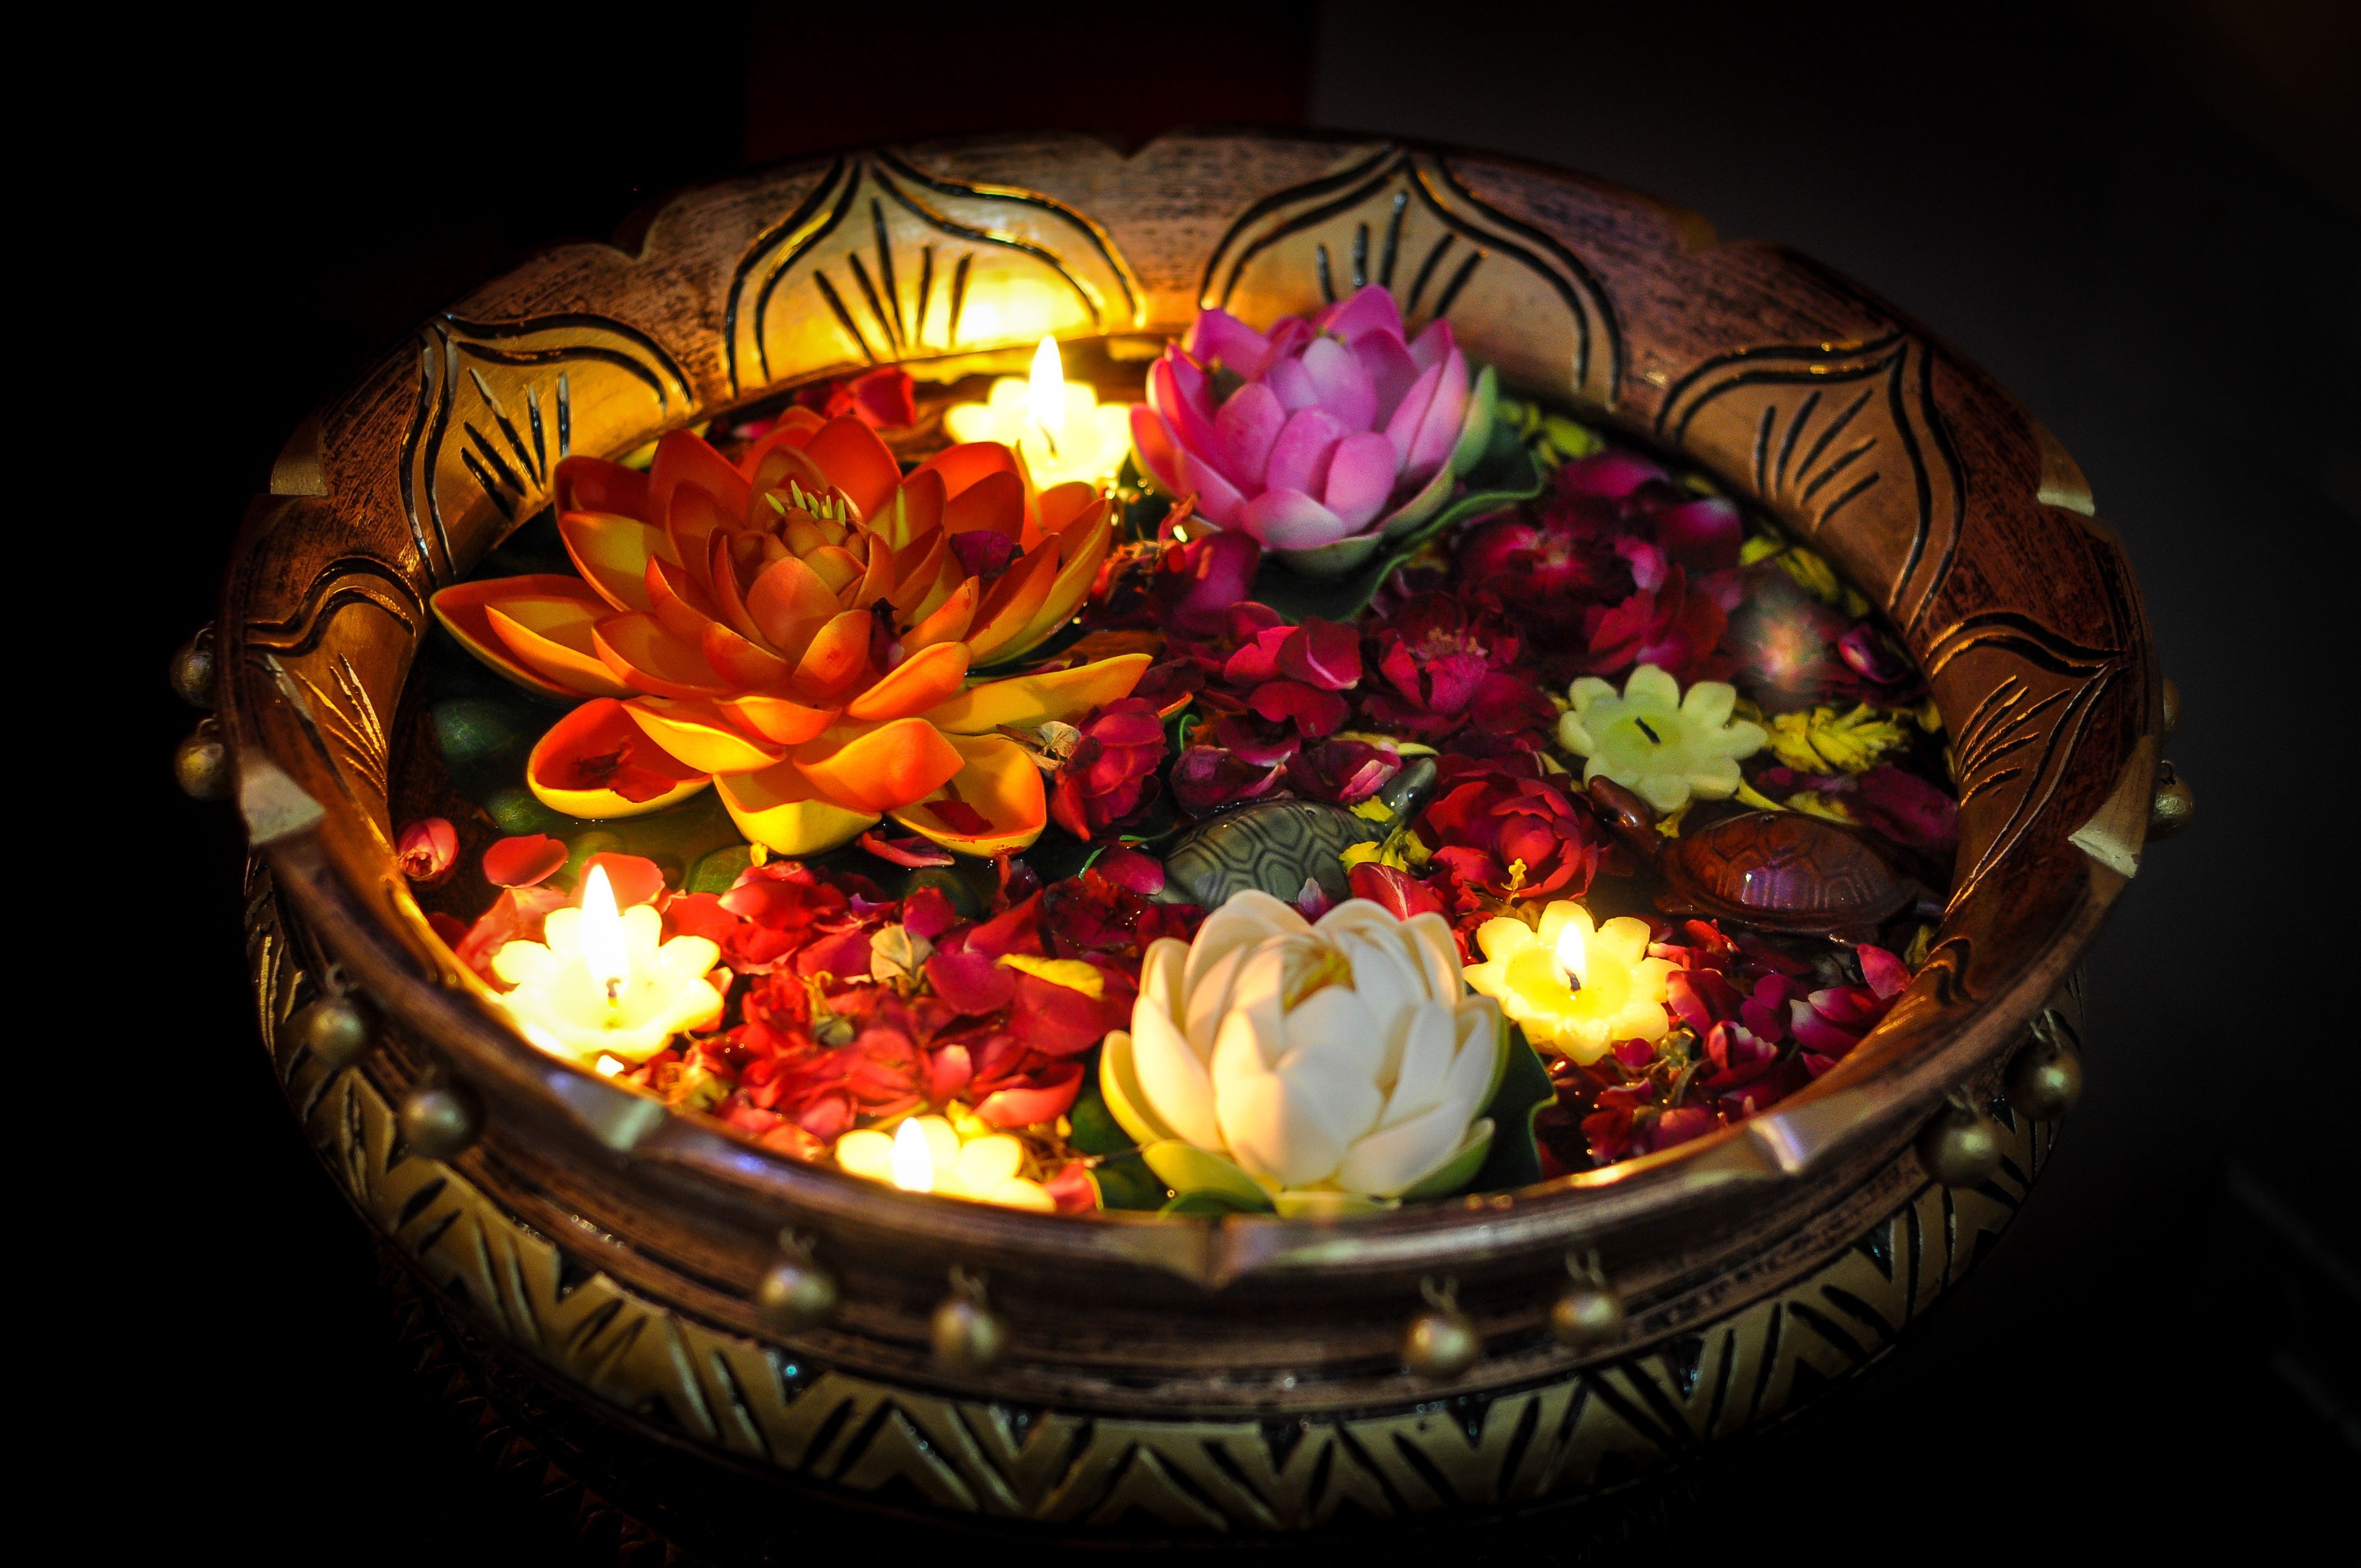 Praznovanje Diwalija s prižgano plavajočo svečo in rožo v skledi, Indija.